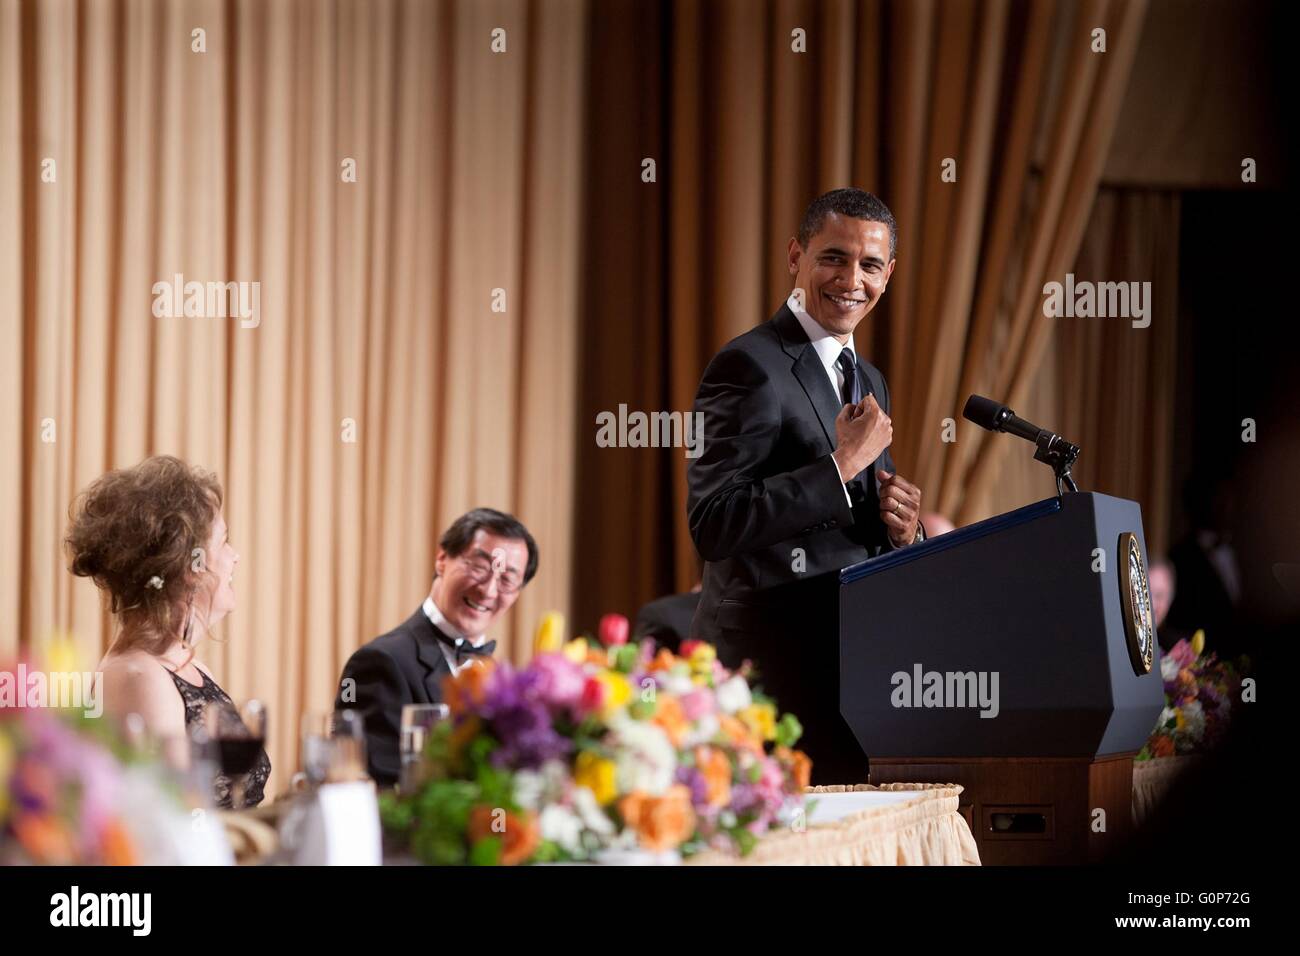 Président américain Barack Obama prononce une allocution au cours de la White House Correspondents Association Dîner 9 mai 2009 à Washington, D.C. Banque D'Images